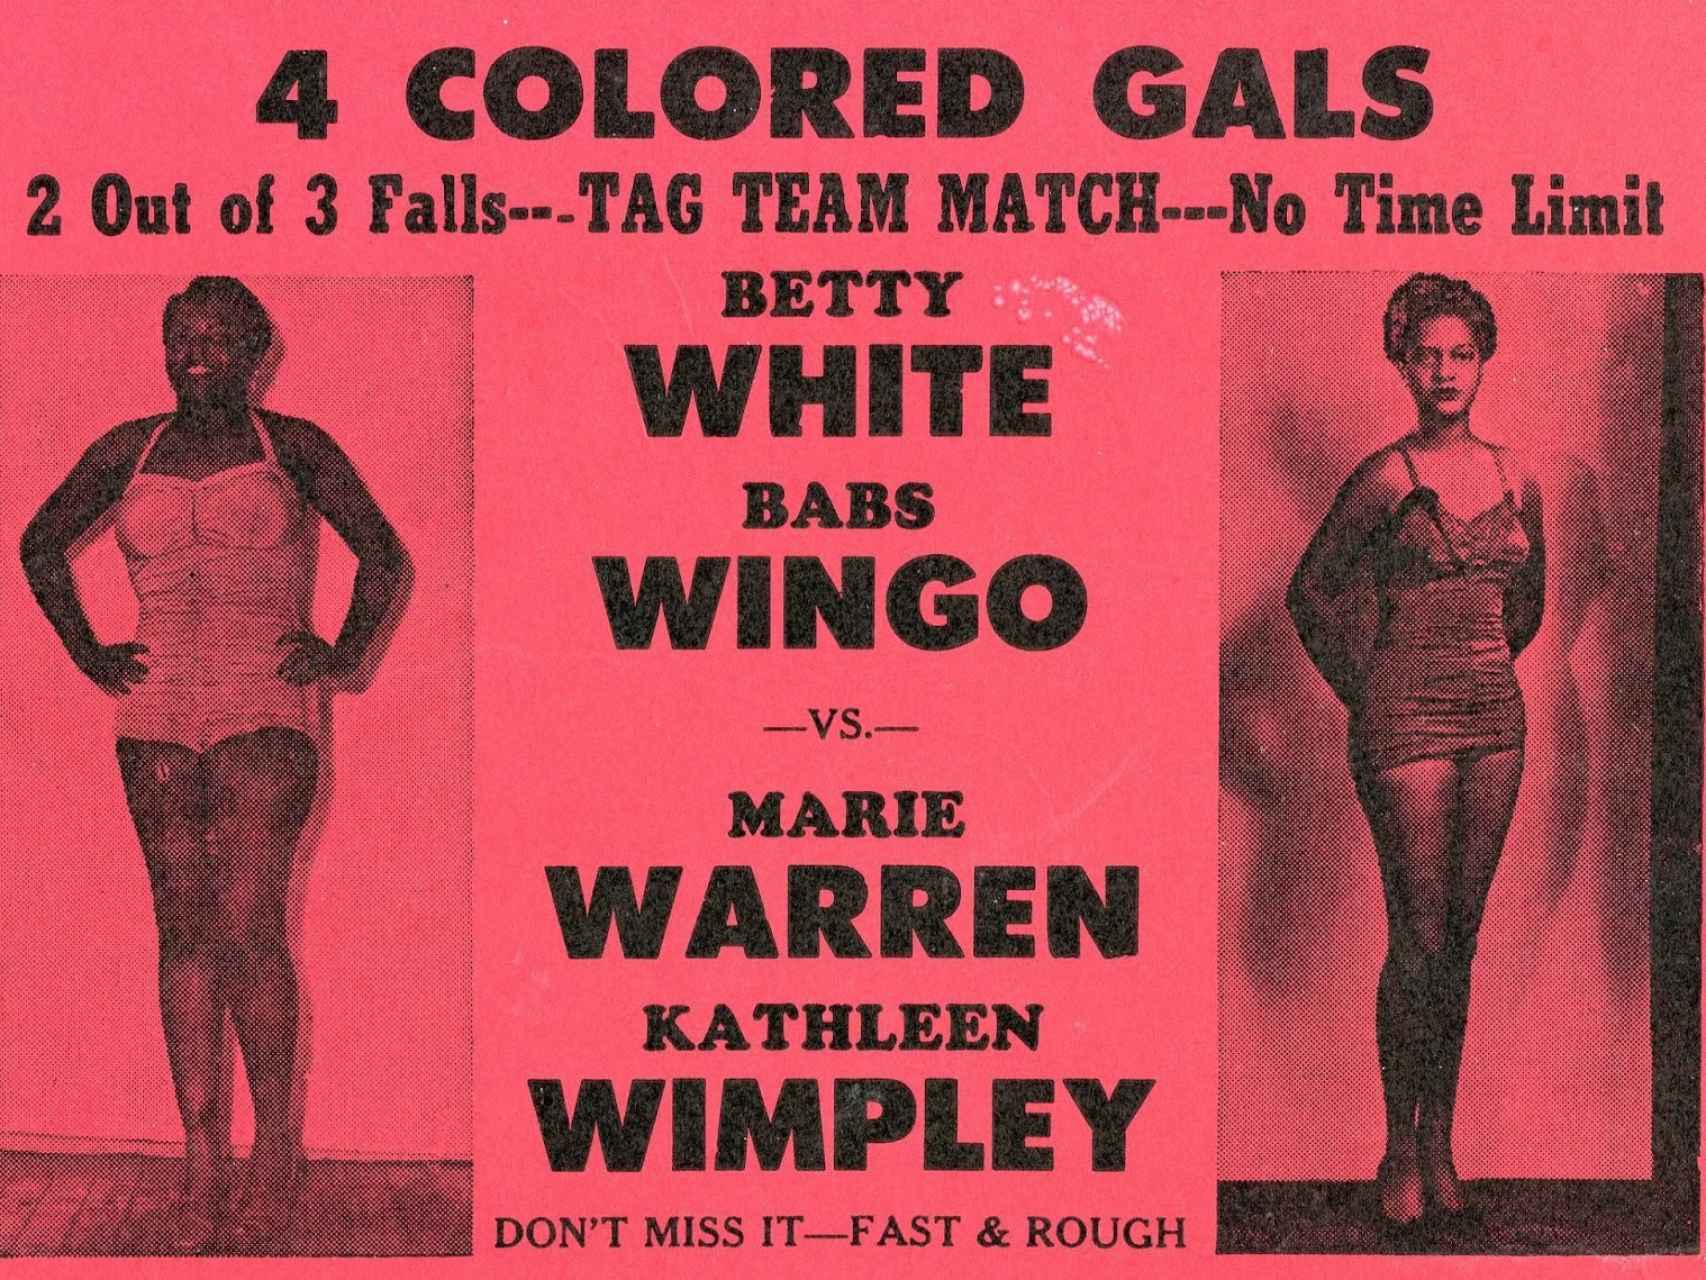 Cartel anunciador de una pelea en la que participaron Wingo y Wimpley.